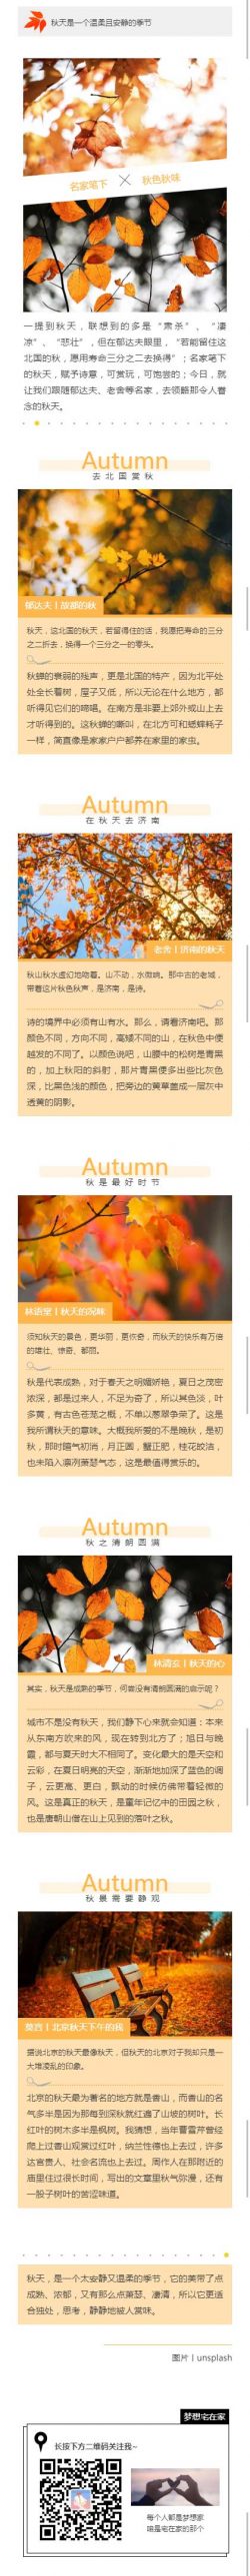 秋天是一个温柔且安静的季节金黄色落叶风格模板